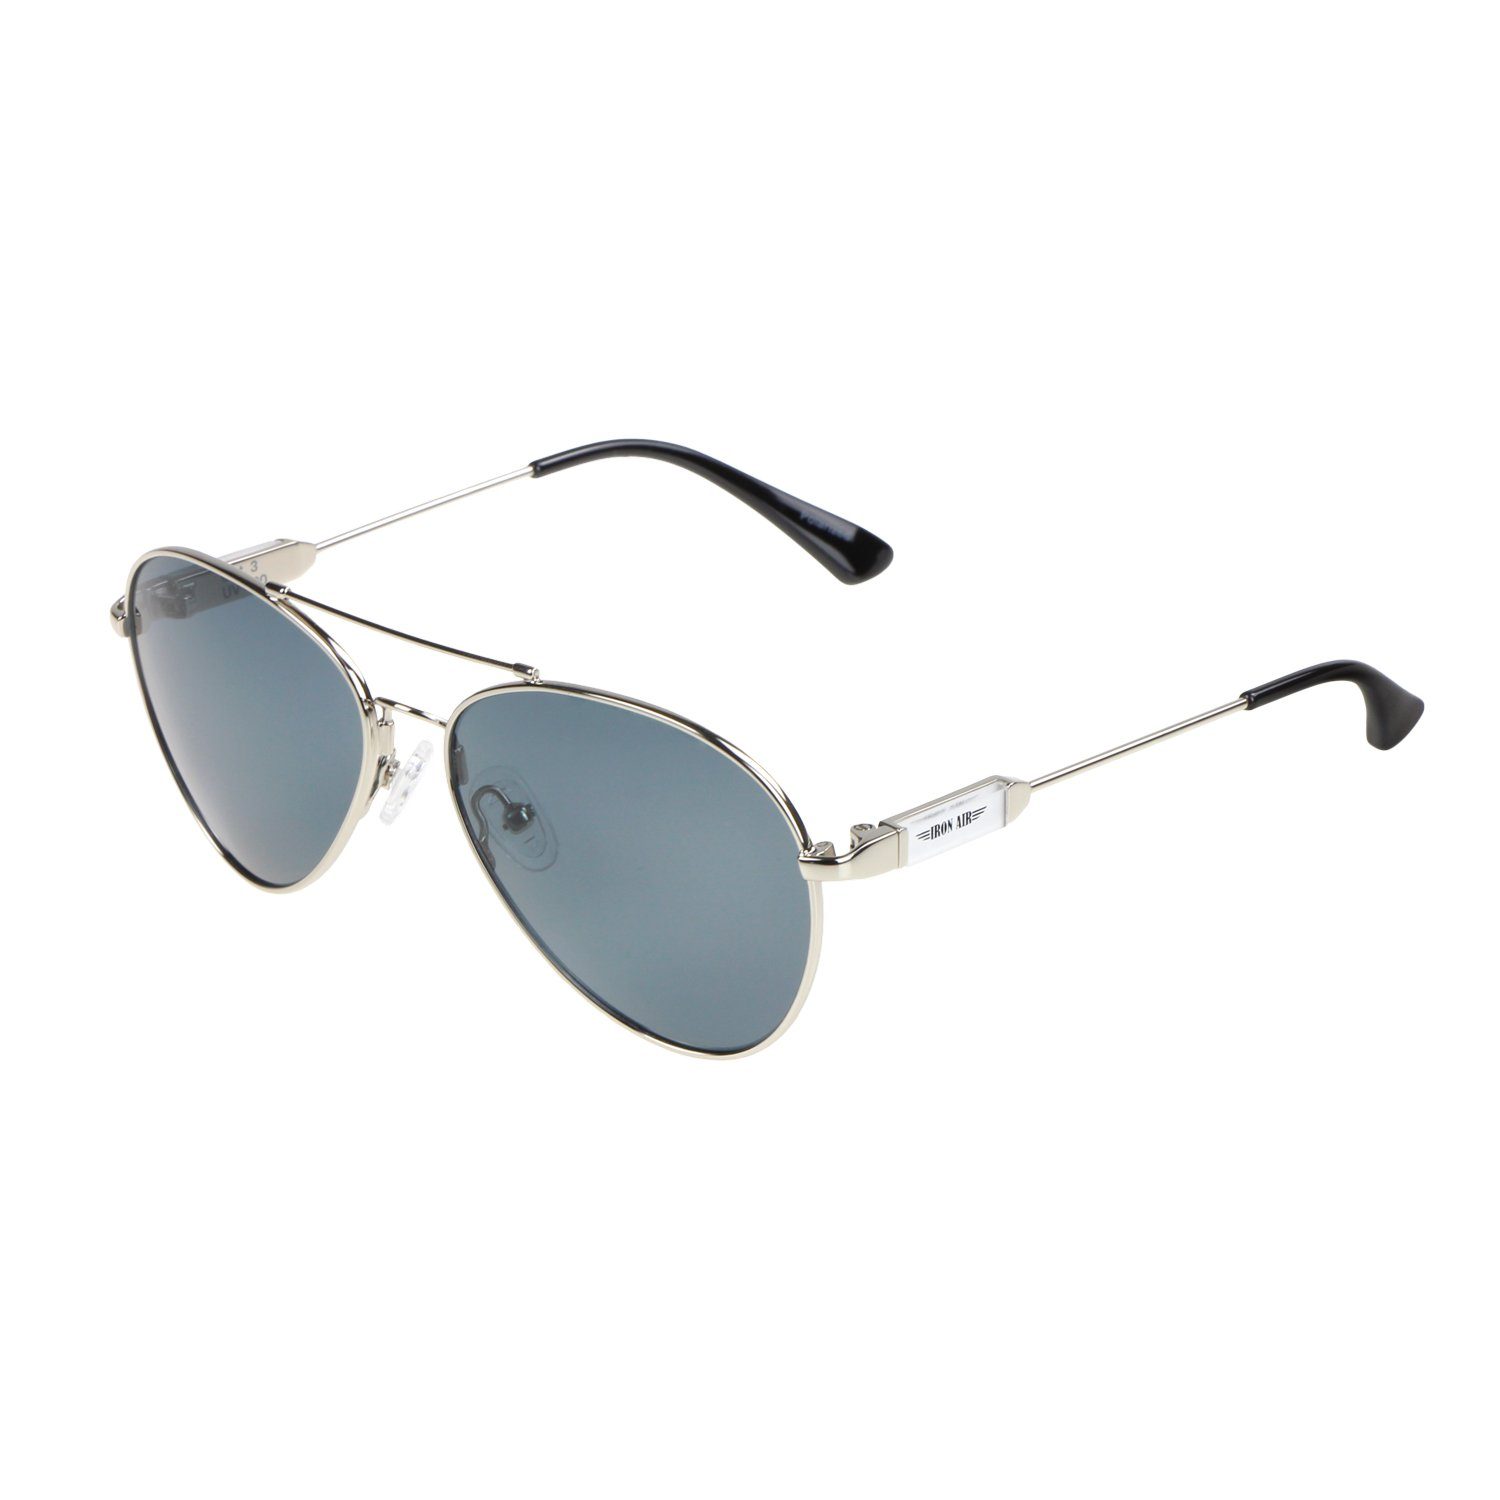 Schwarze Metall ActiveSol - Sonnenbrille Brillenputztuch Nasenbügel (inklusive Pilotenbrille SUNGLASSES Silber und Kinder, Flieger-Brille - Bügel Gläser im Memory mit 10 Metall Jahre, Schiebeschachtel) für 6